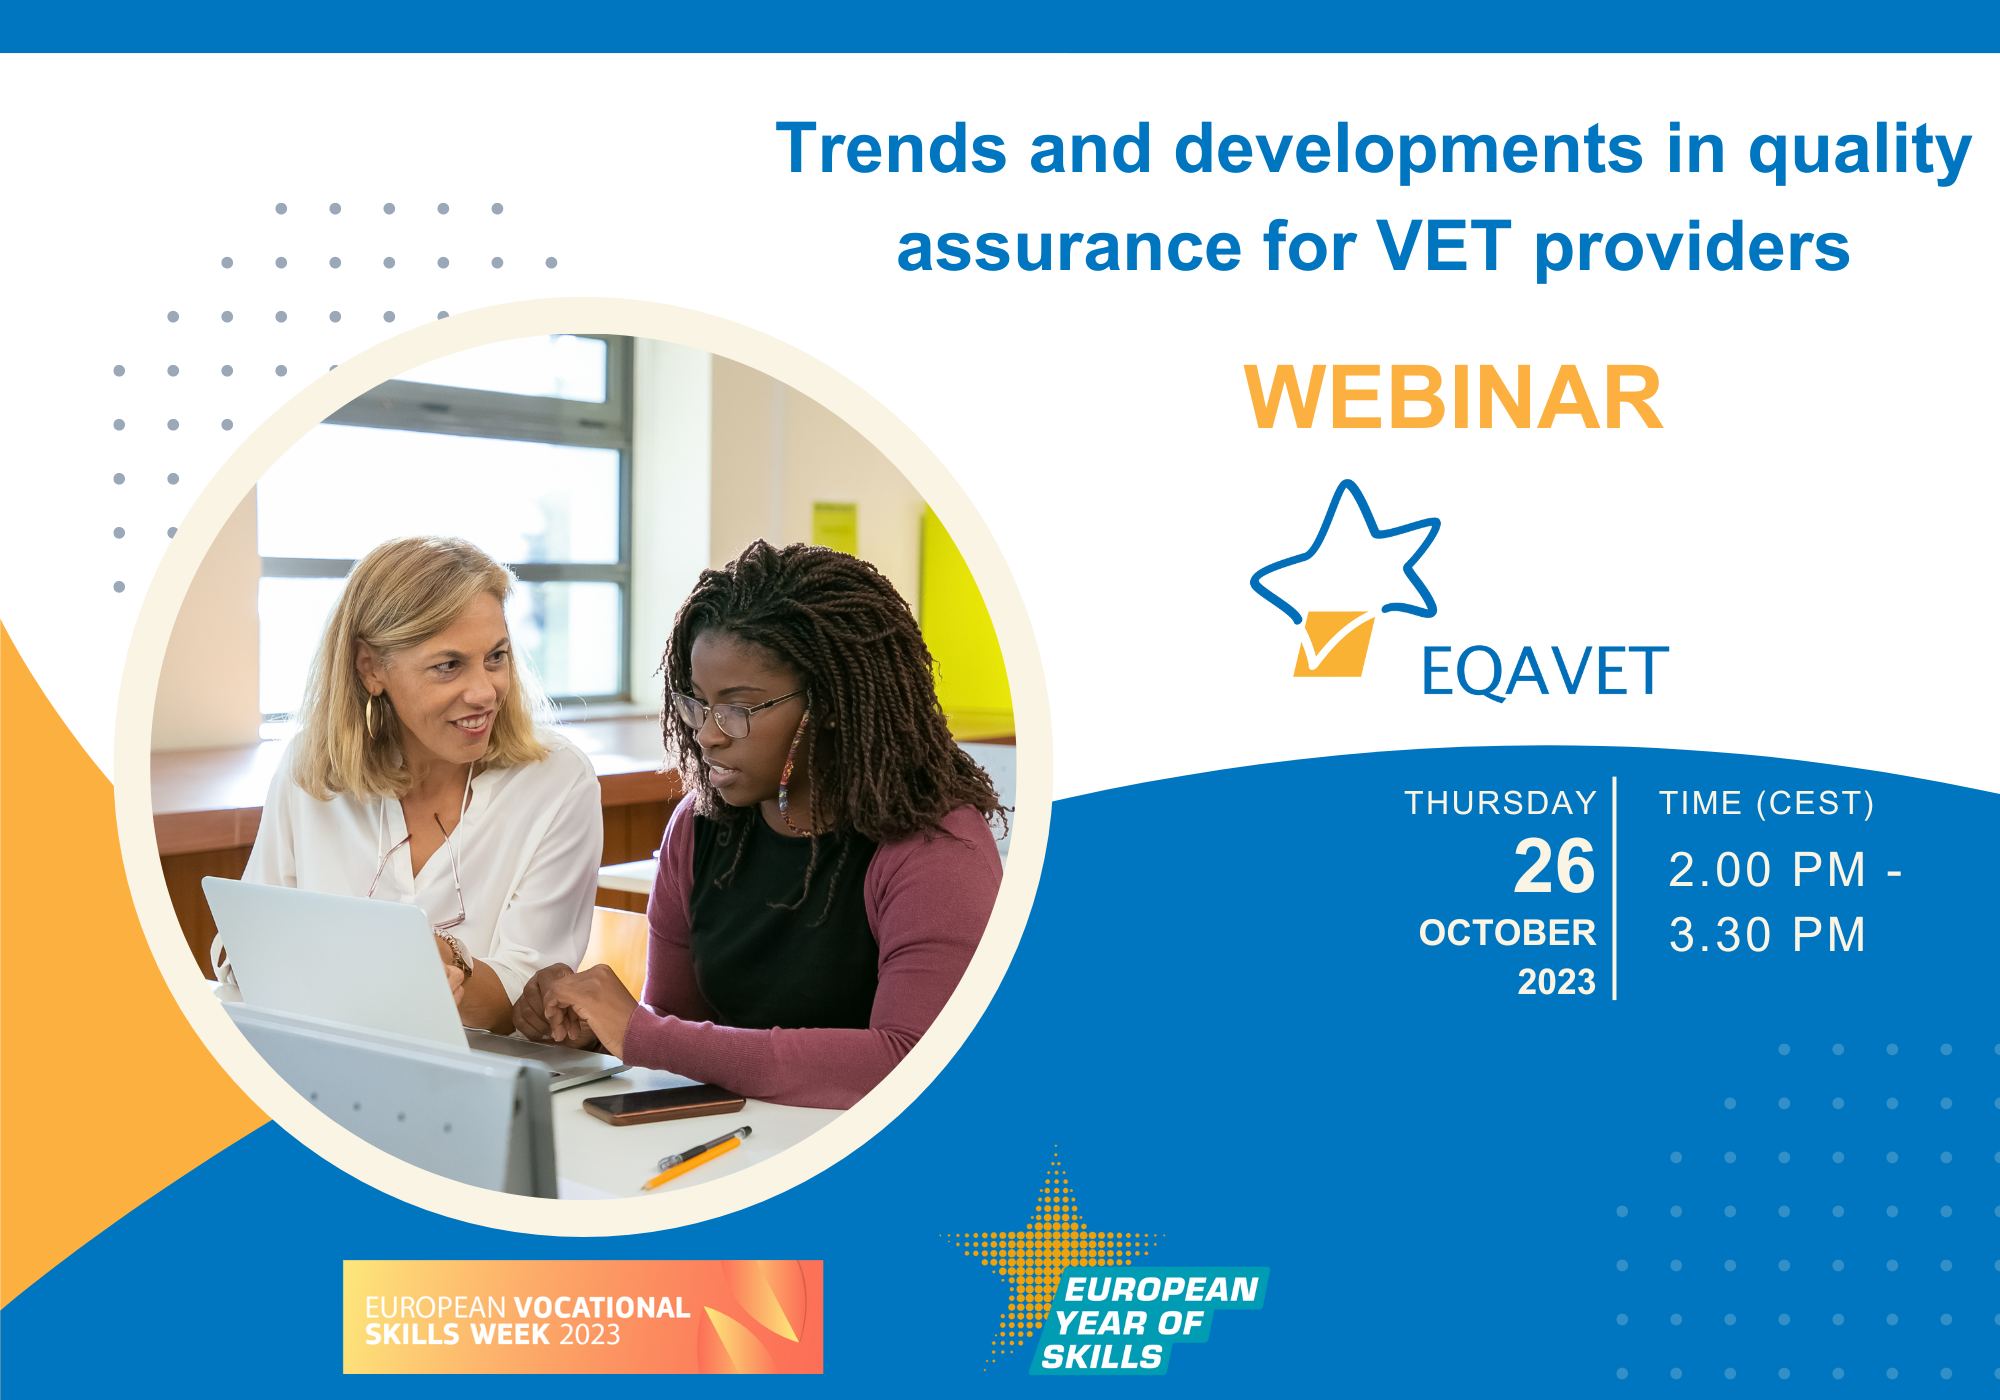 EQAVET Webinar to Explore QA Trends at VET Provider level - 26 October 2023